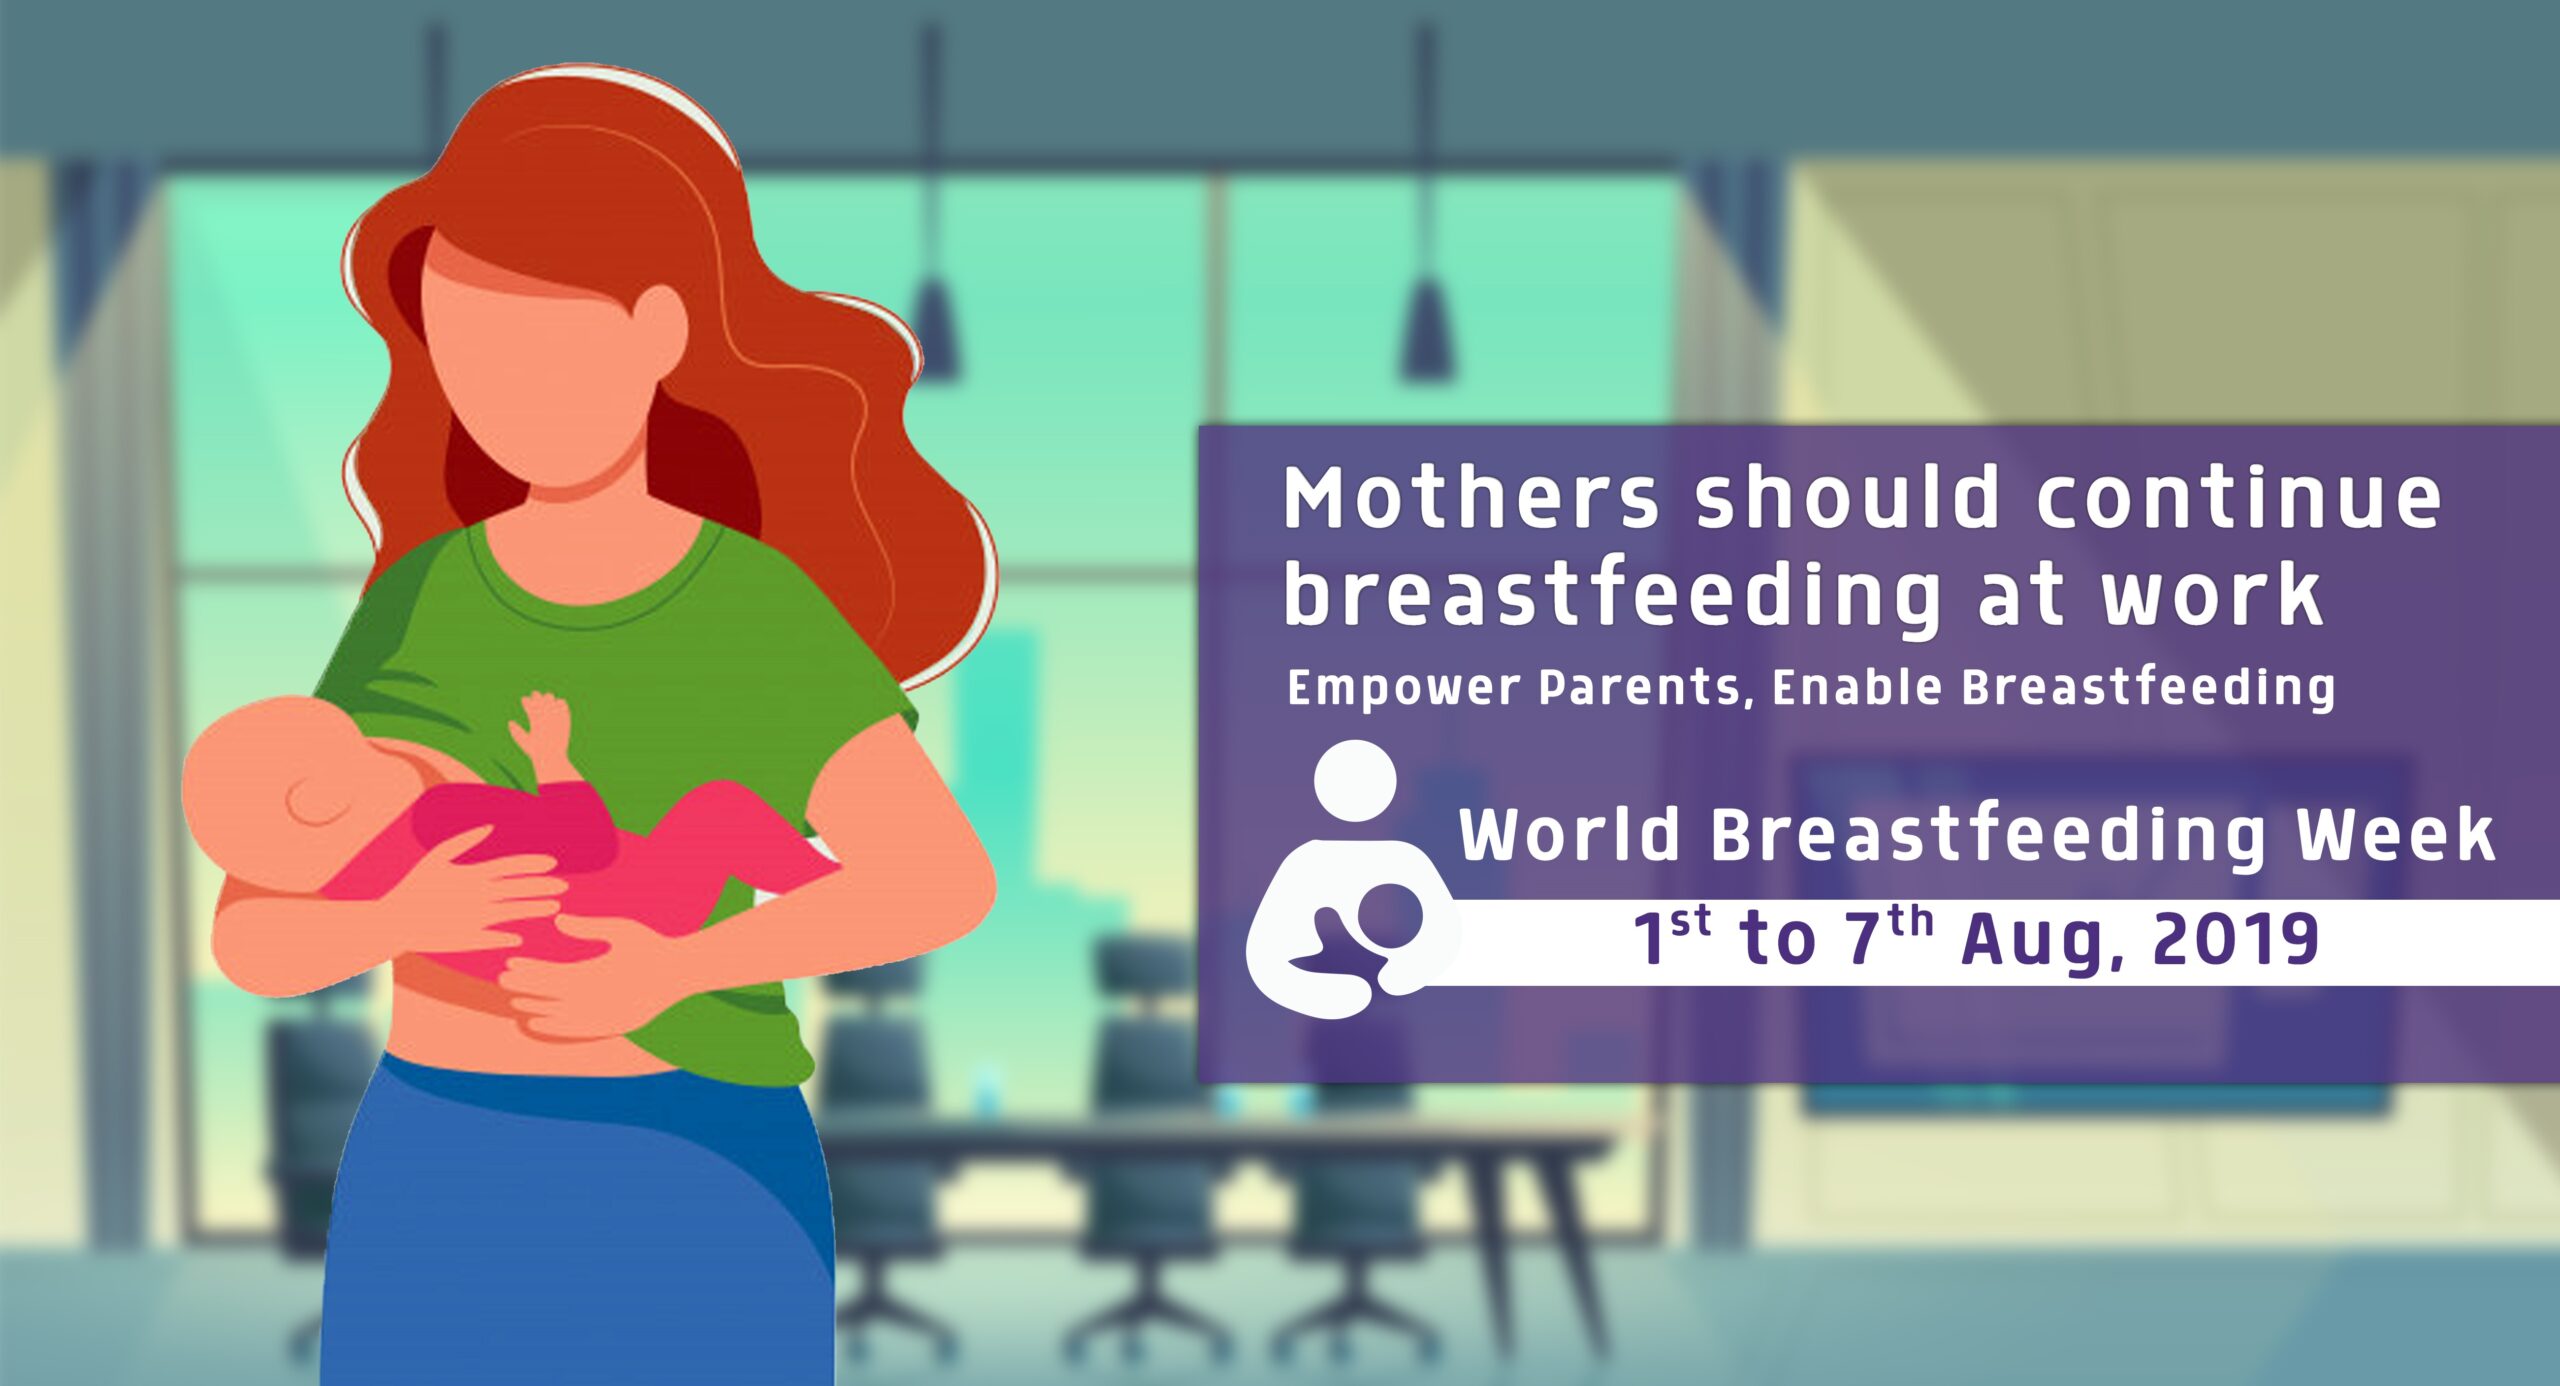 Breastfeeding Week